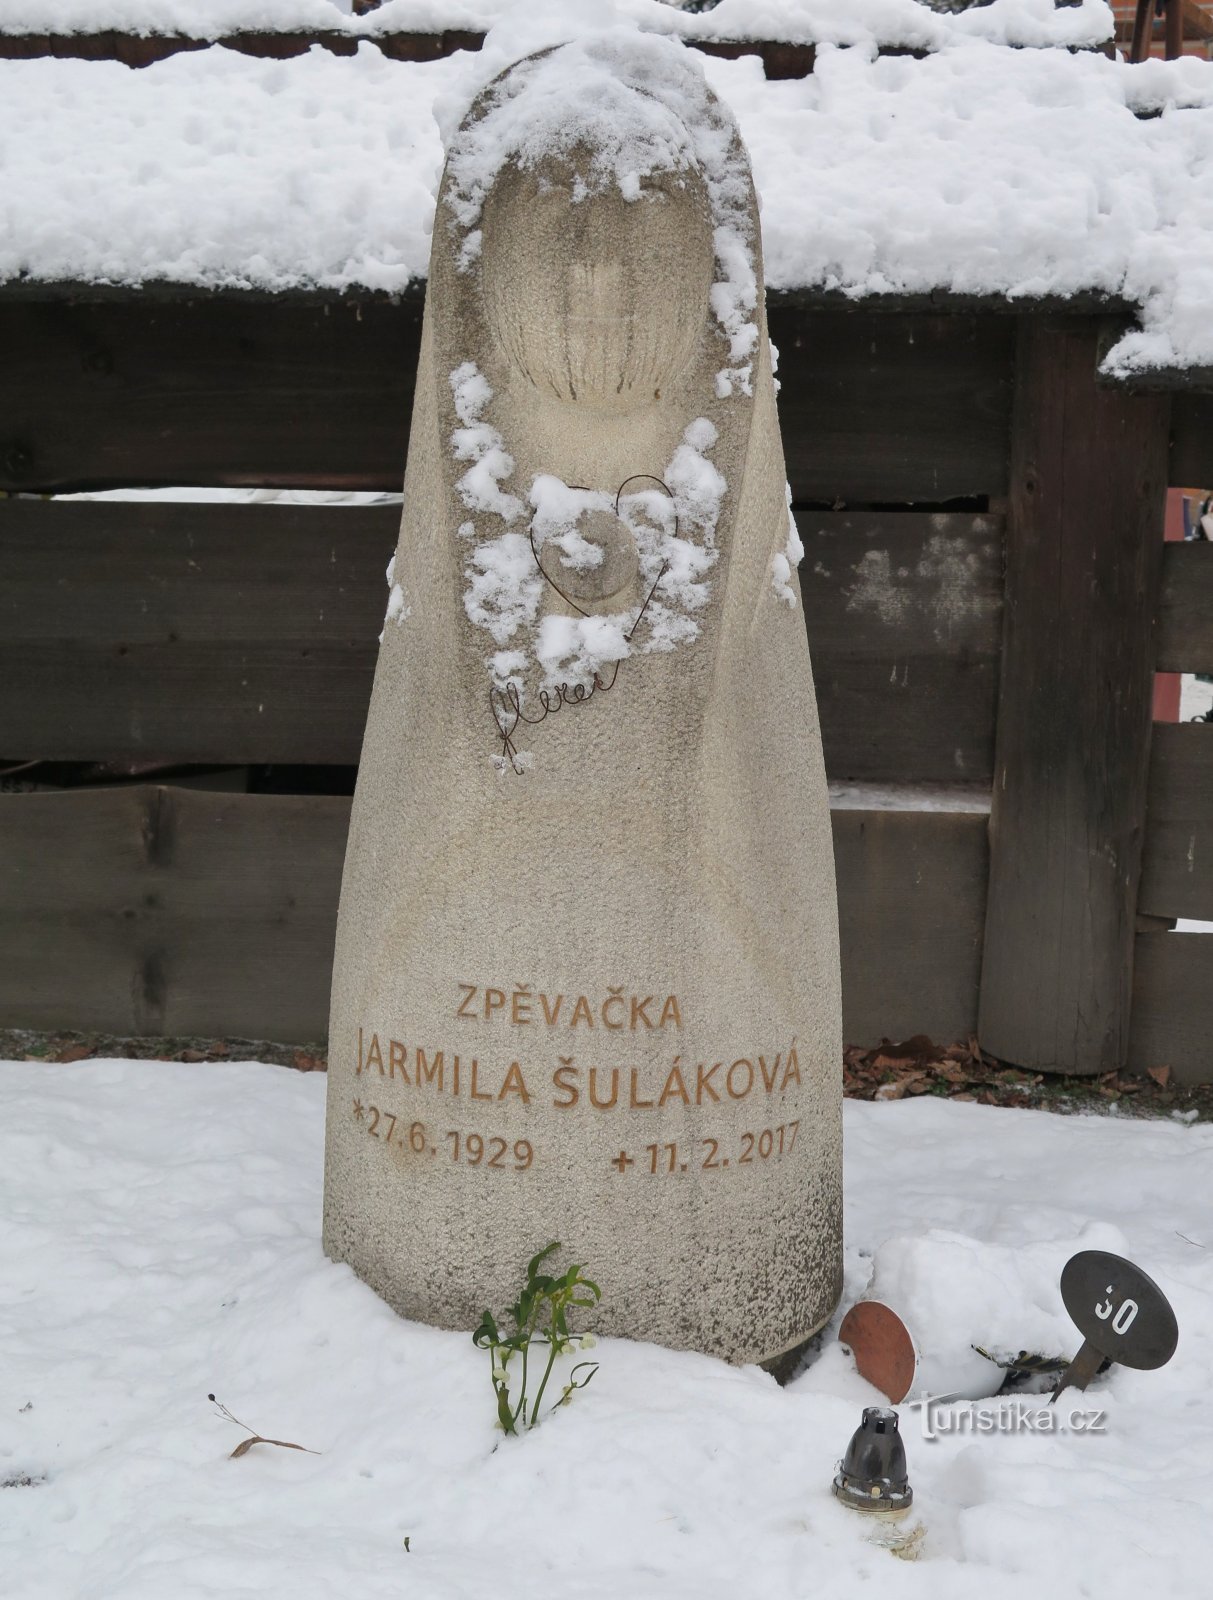 Rožnov pod Radhoštěm – ワラキアの女王ヤルミラ・シュラーコヴァの記念墓